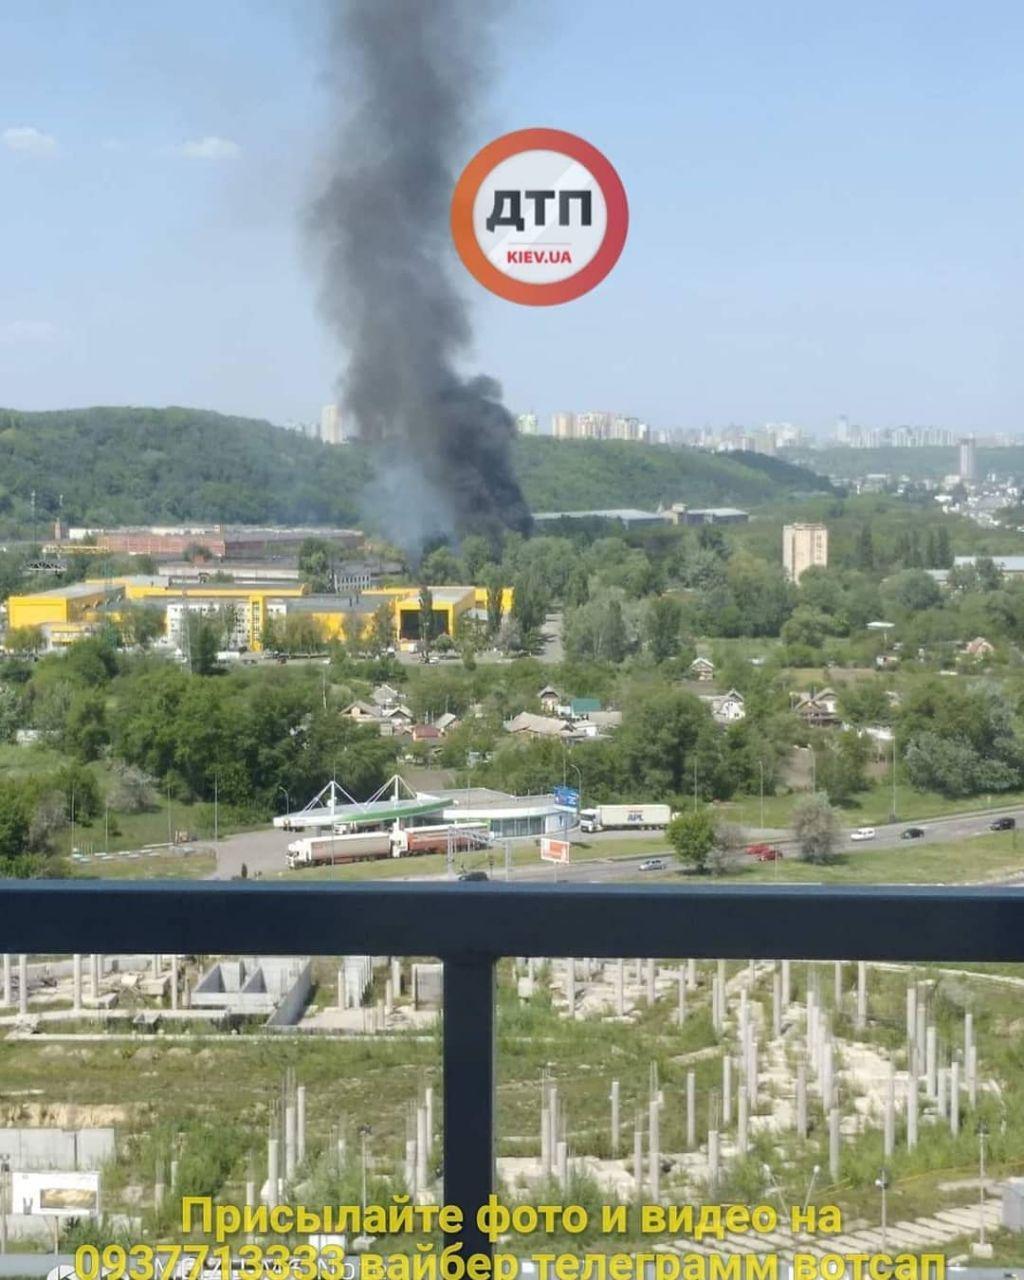 Згоріли понад 50 авто: фото і відео масштабної пожежі в Києві